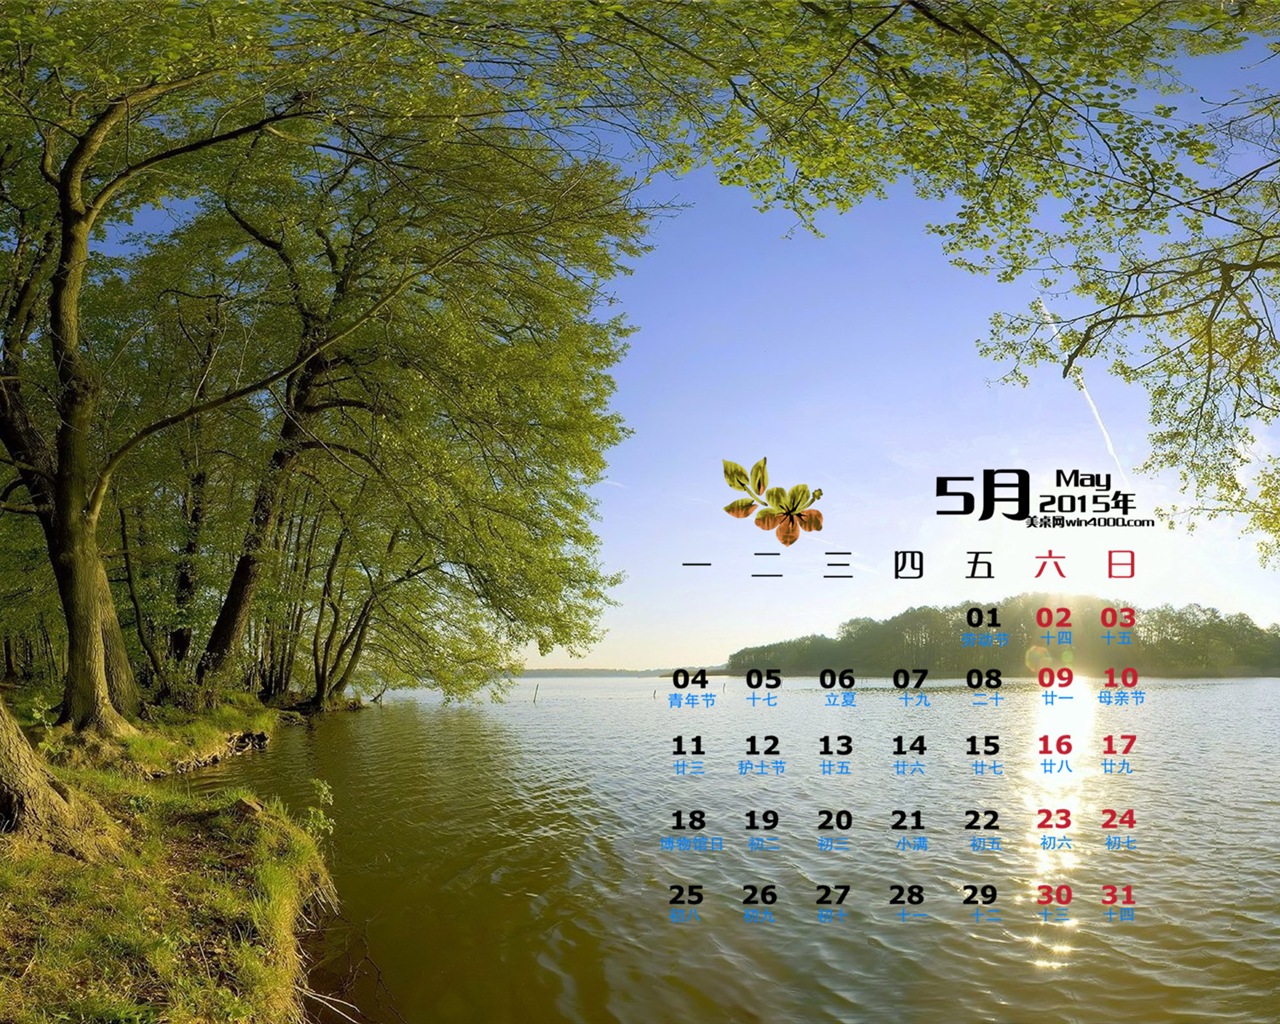 Mai 2015 Kalender Wallpaper (1) #4 - 1280x1024